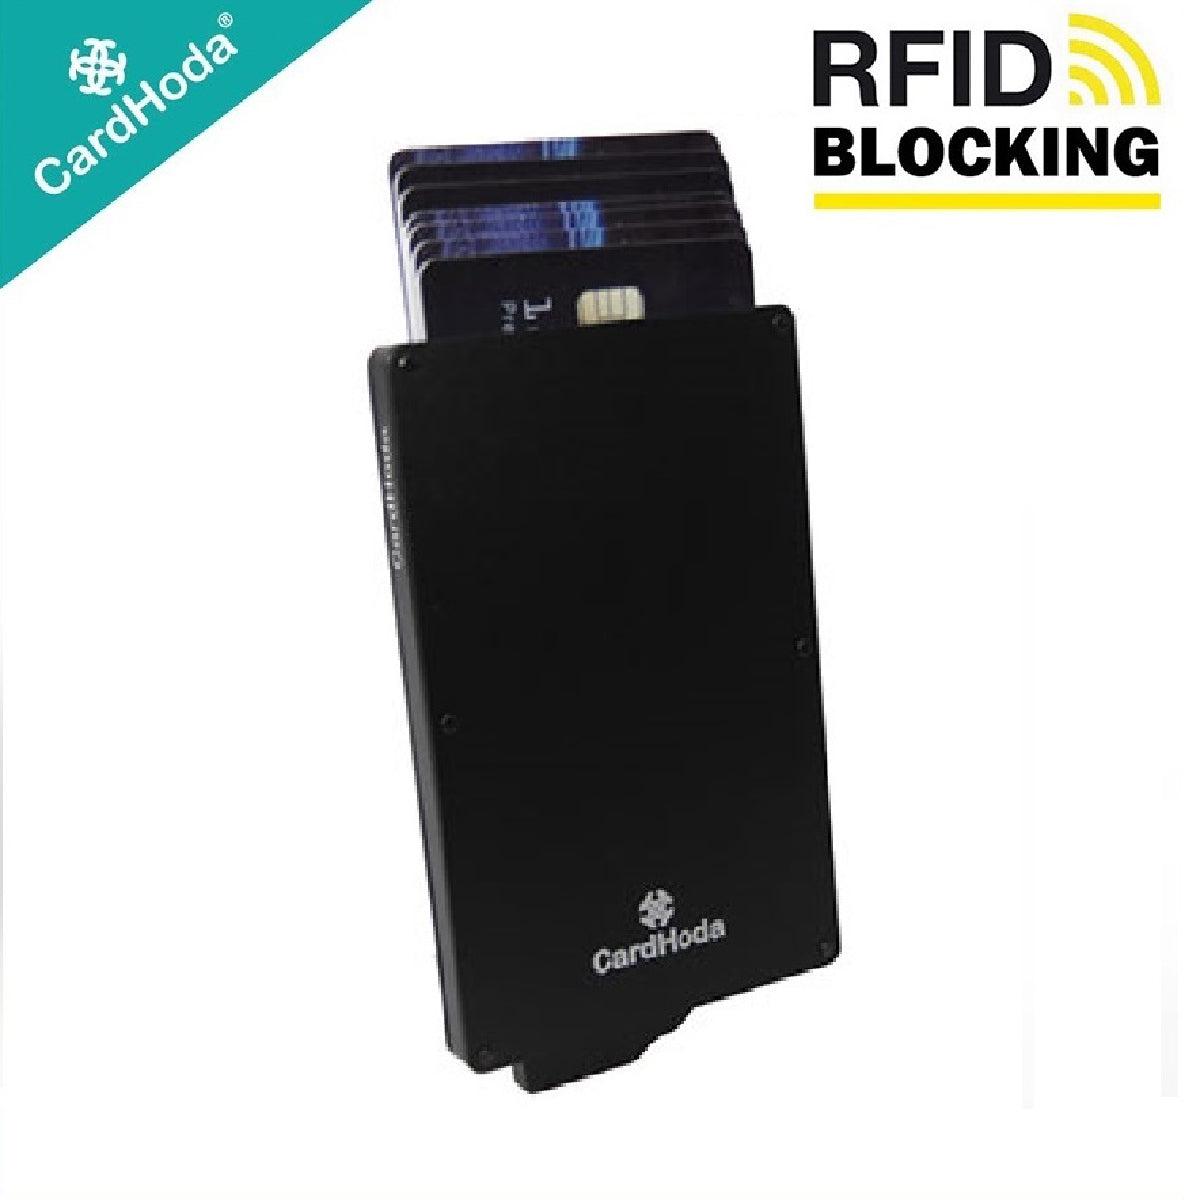 [寄海外] Cardhoda - RFID智能防護鋁盒卡套 (黑色)